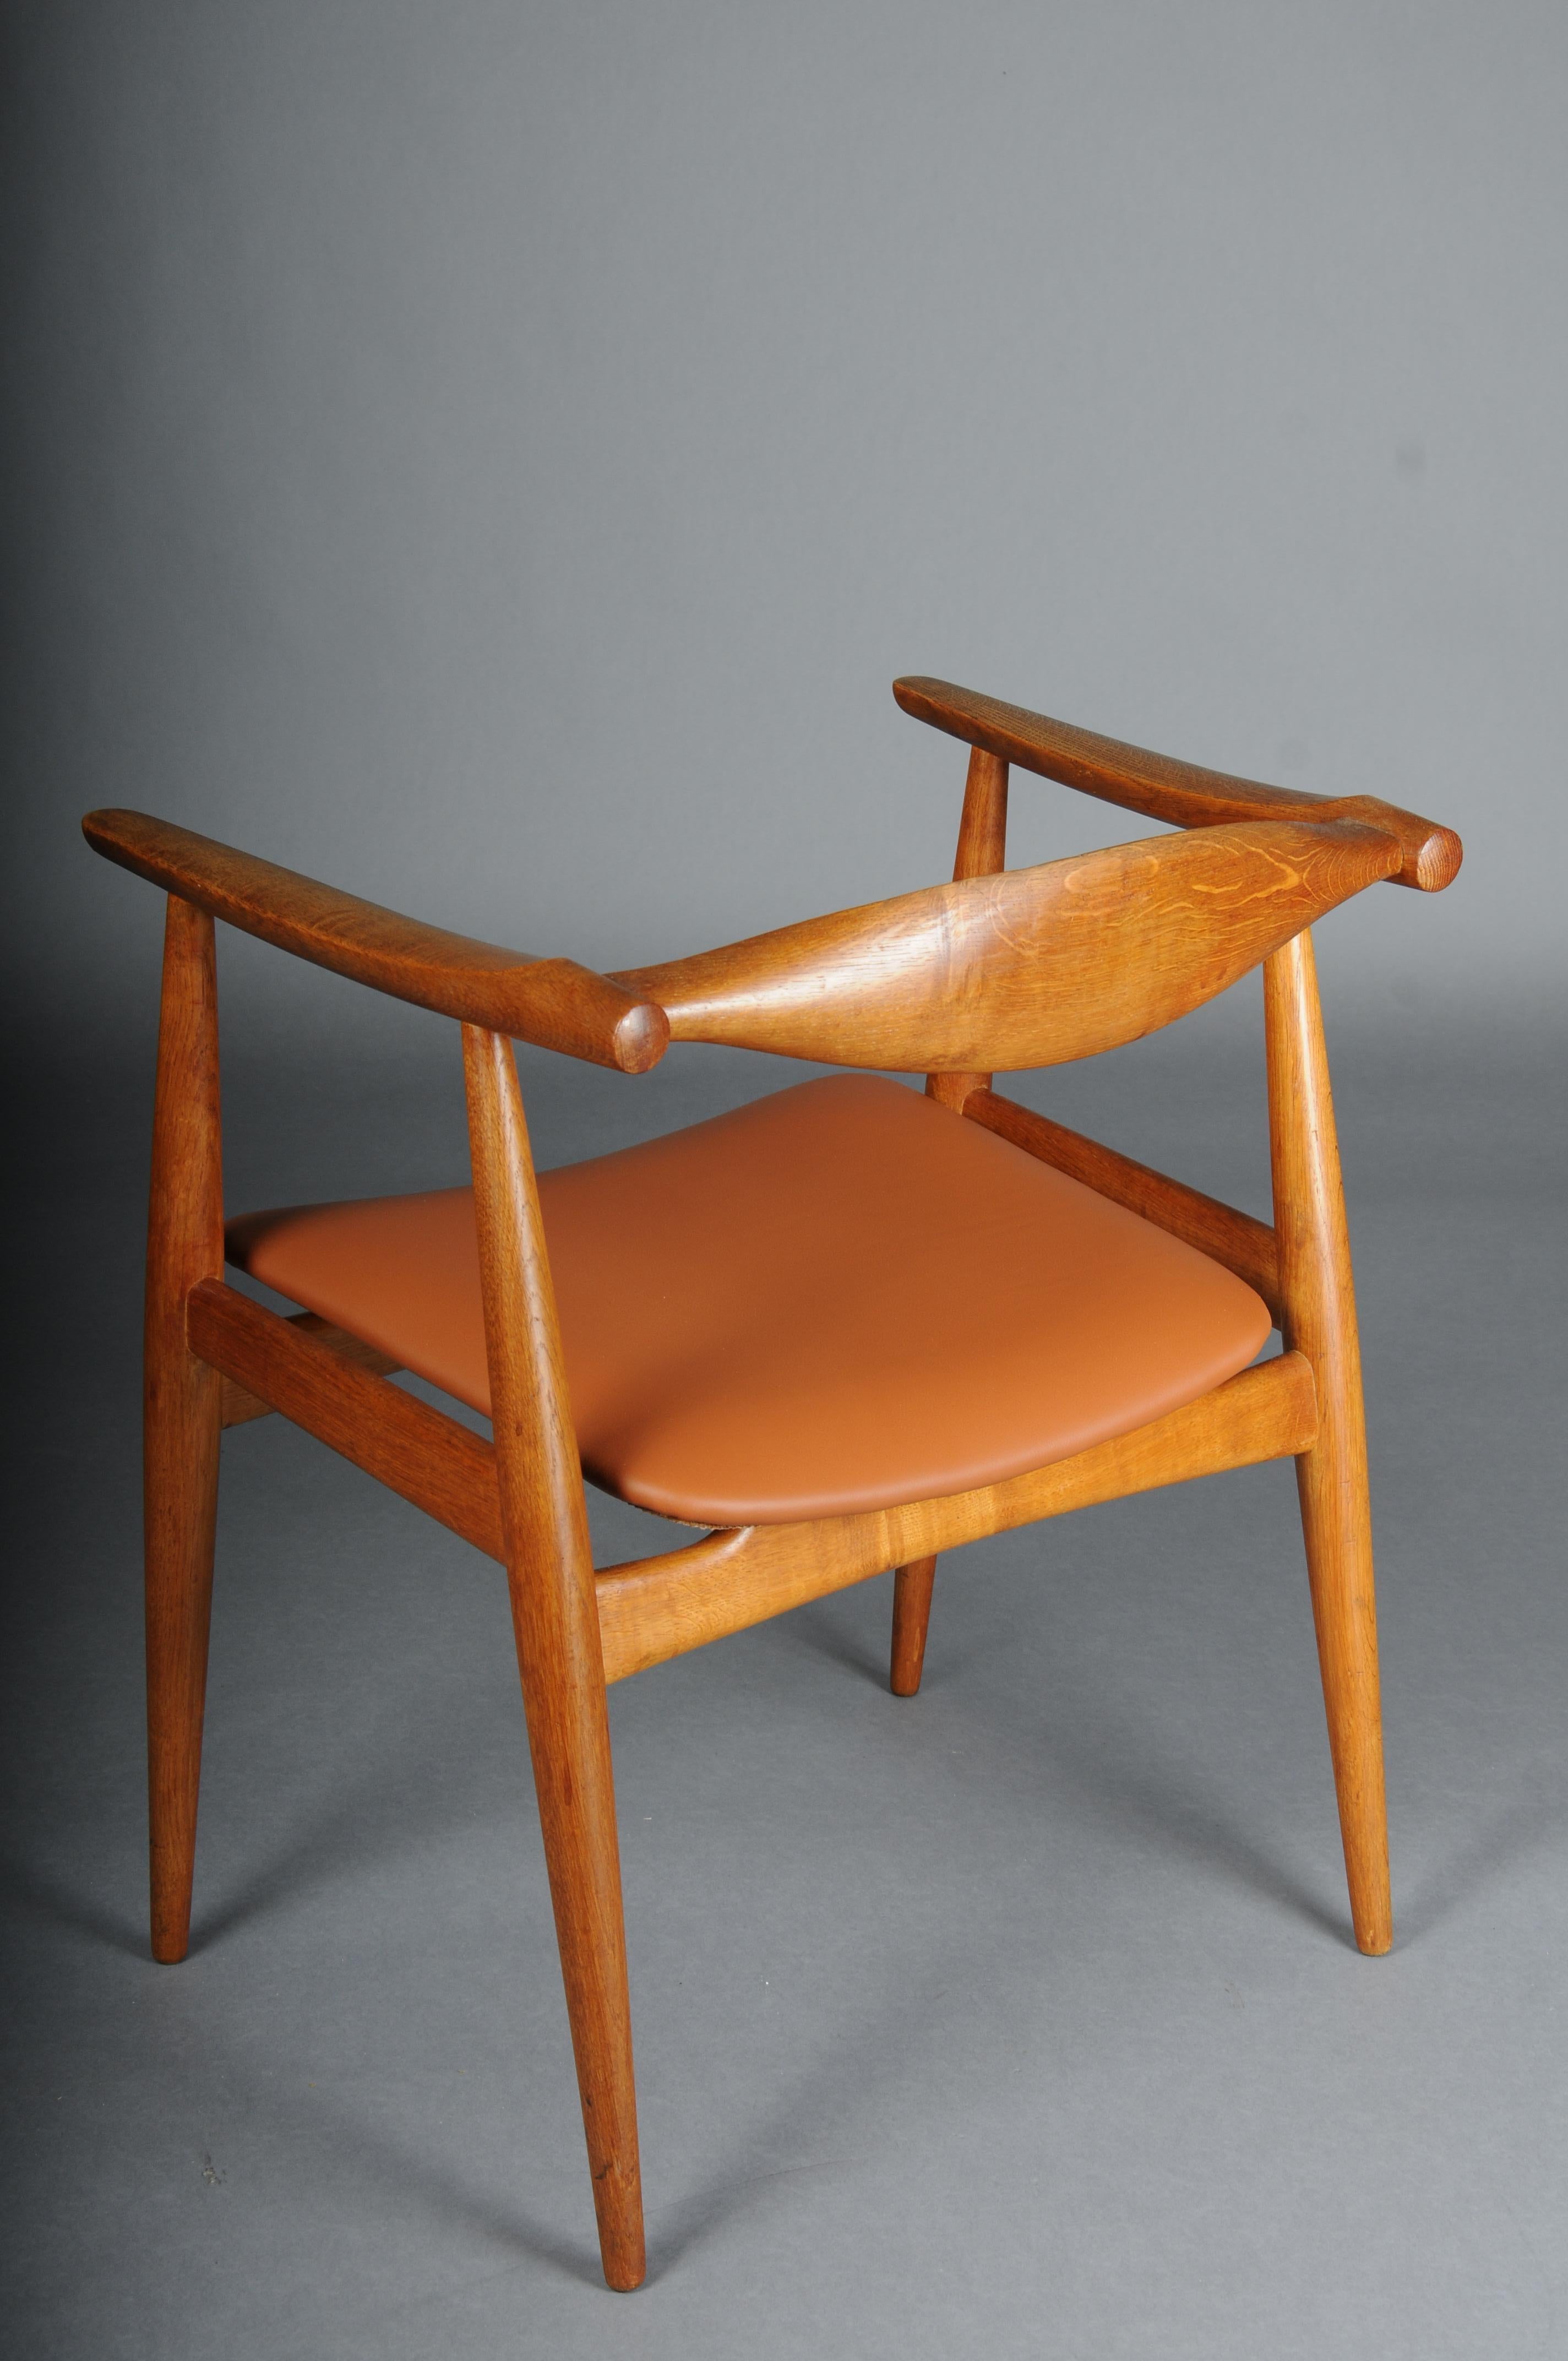 HANS J. WEGNER. Armchair, Teak/leather, Model CH-35, Carl Hansen & Son, Denmark. For Sale 1